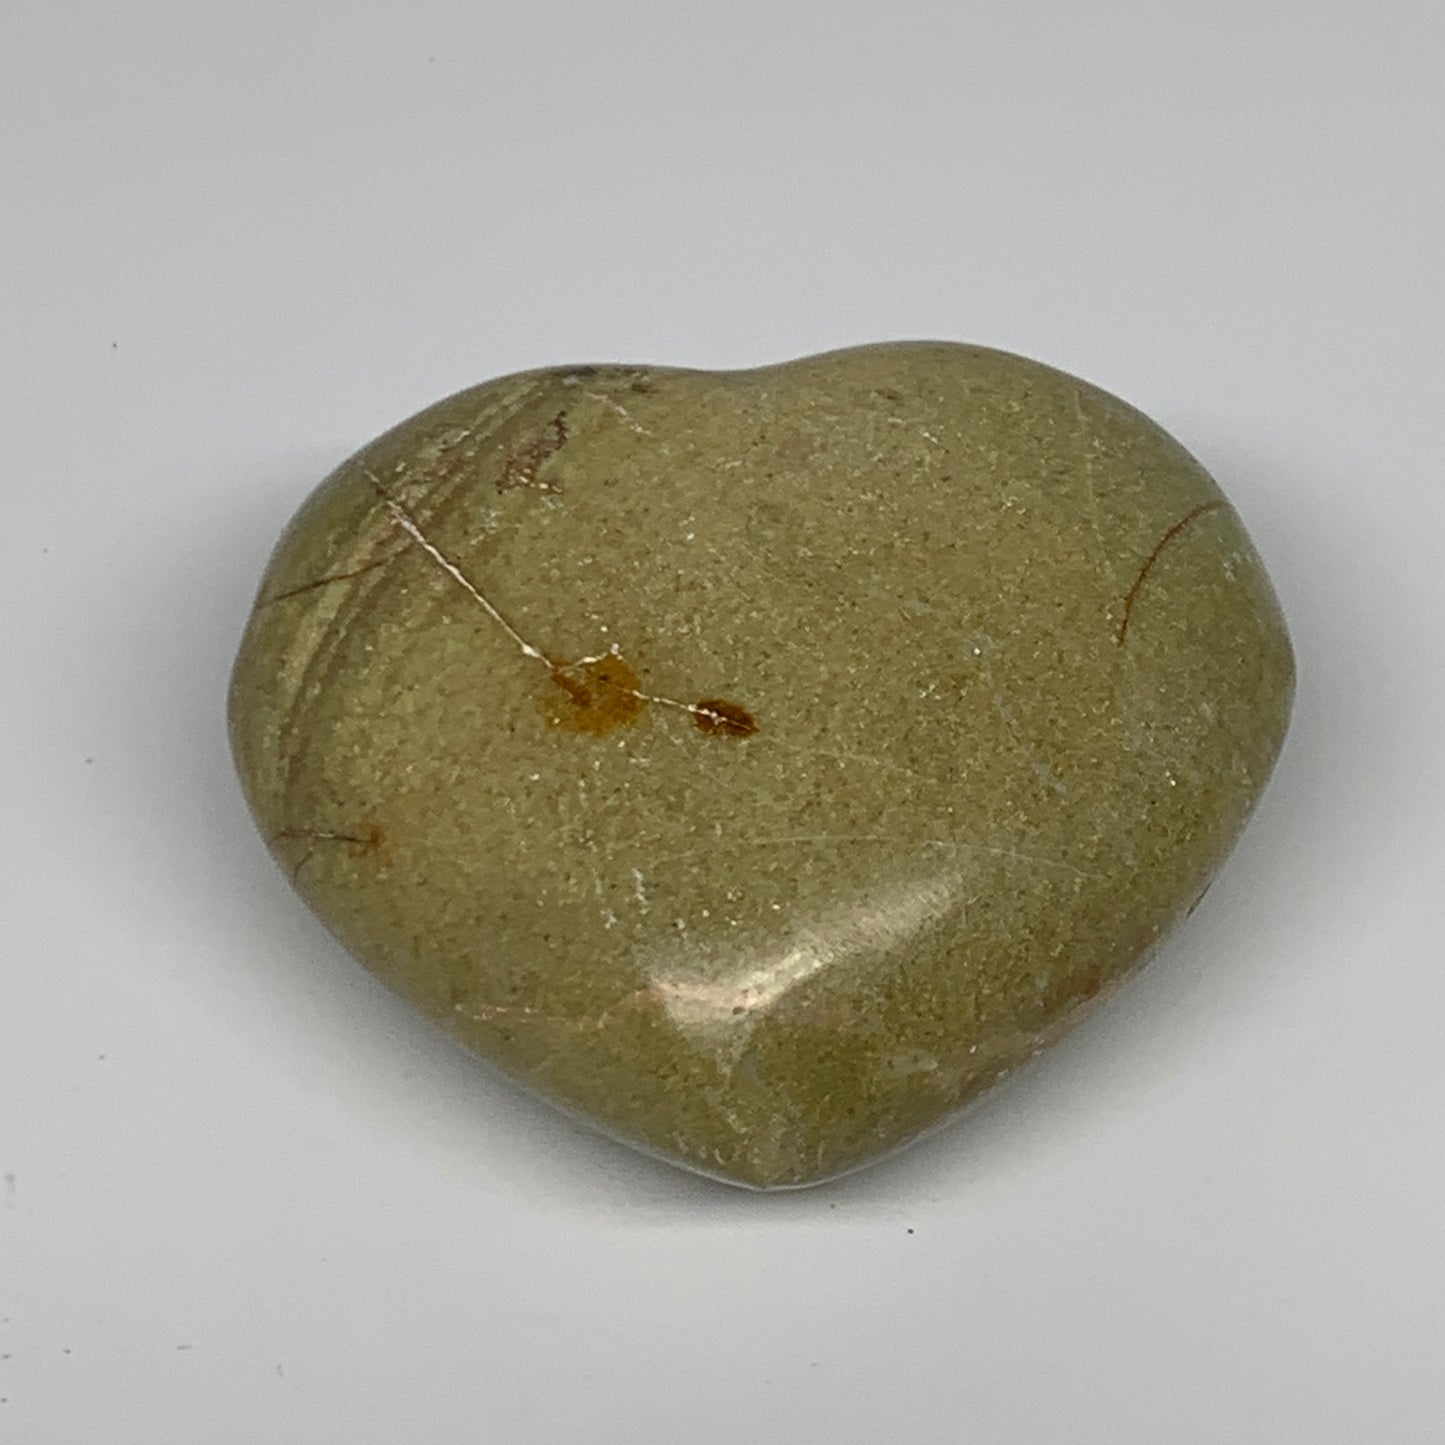 167.2g,2.5"x2.9"x1.4", Green Opal Heart Polished Gemstone @Madagascar, B17581